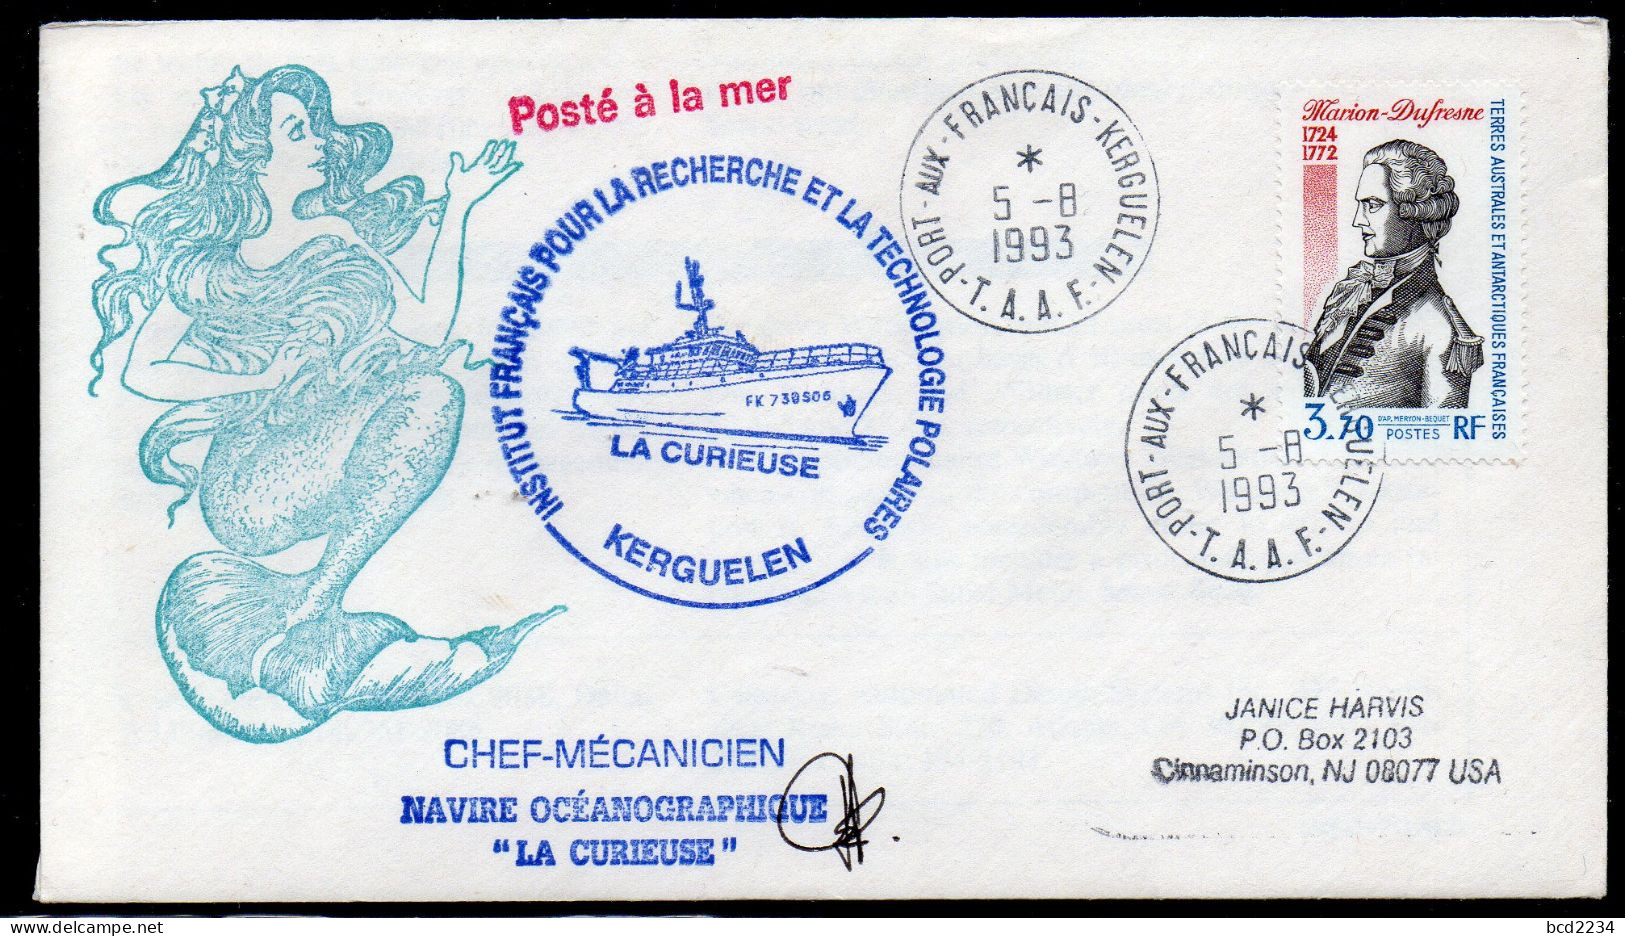 FRANCE1993 ANTARCTIC POLAR COVER CHEF-MECANICIEN LA CURIEUSE KERGUELEN MERMAID INSTITUT POUR RECHERCHE POLAIRES FRANCAIS - Polar Ships & Icebreakers